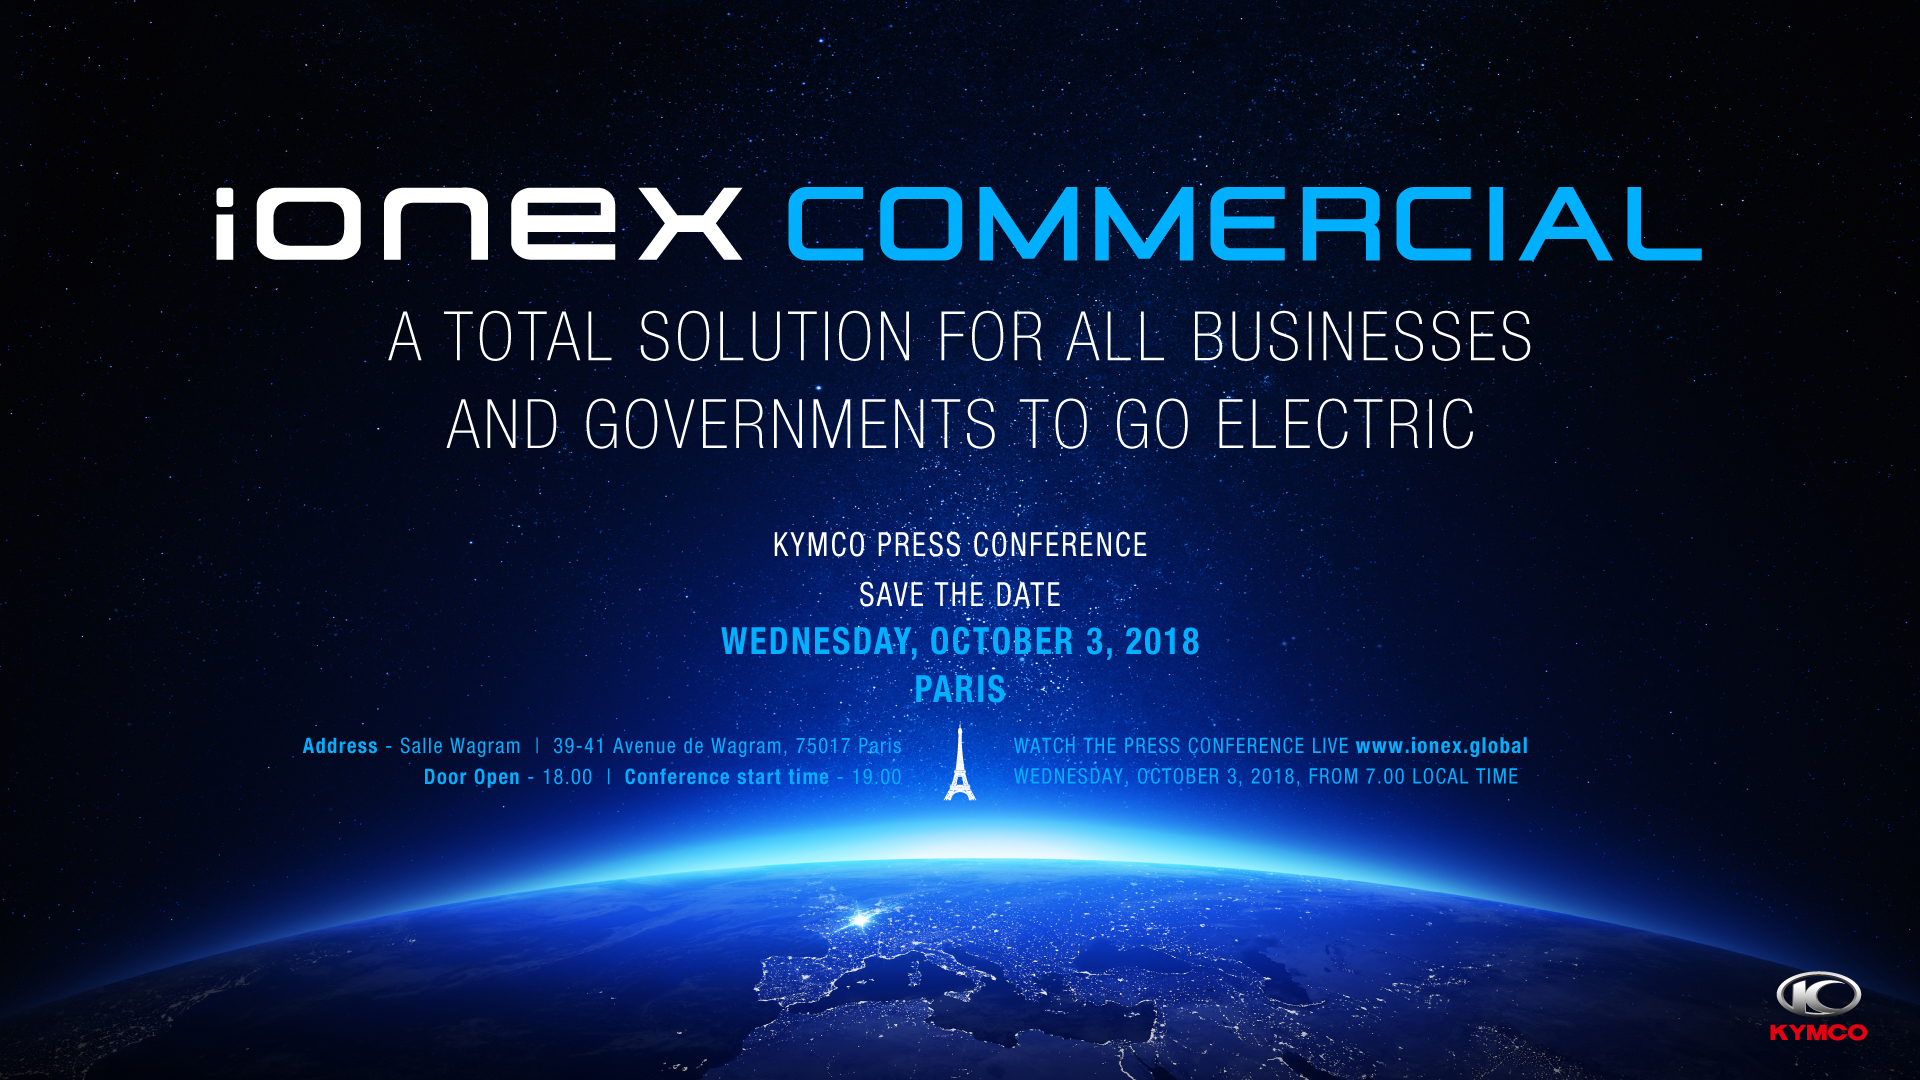 Ionex Commercial Invitation-Address+Door Open